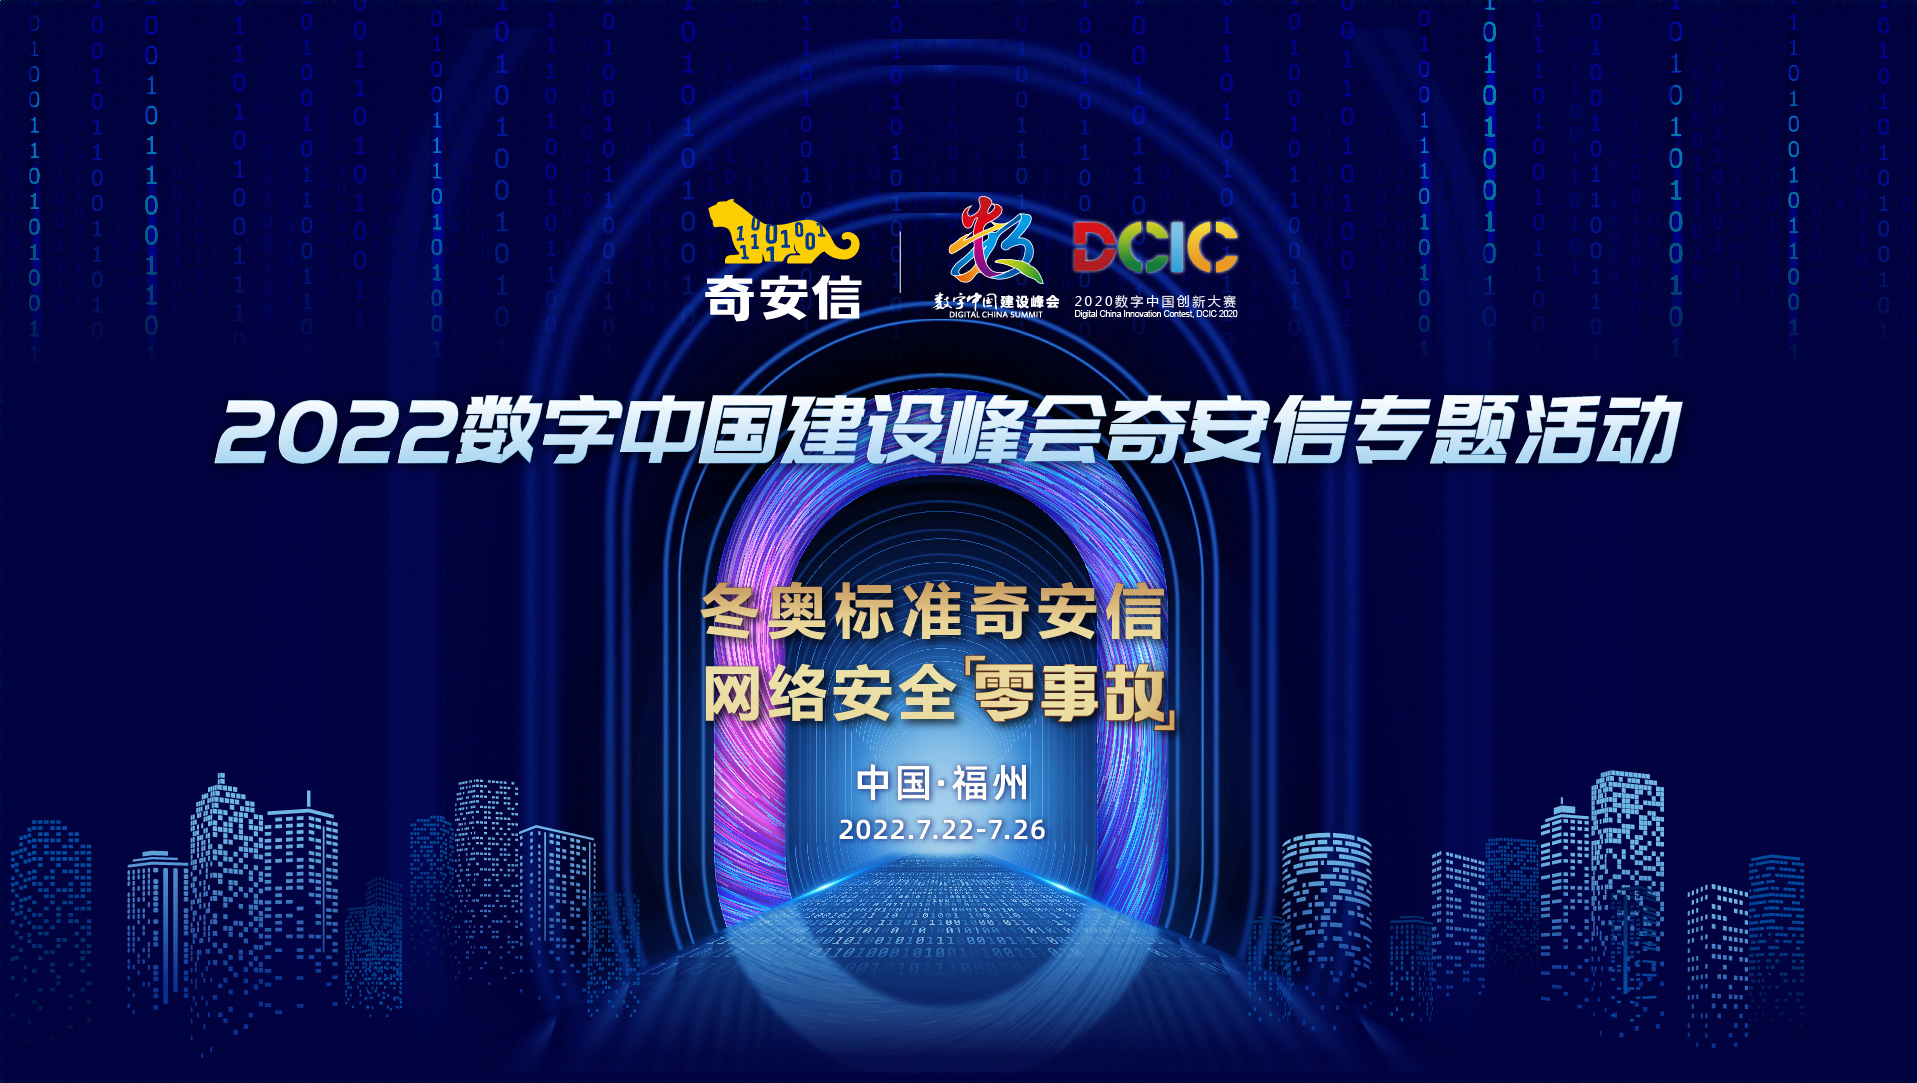 第五届数字中国建设峰会——冬奥标准奇安信 网络安全零事故系列精彩活动